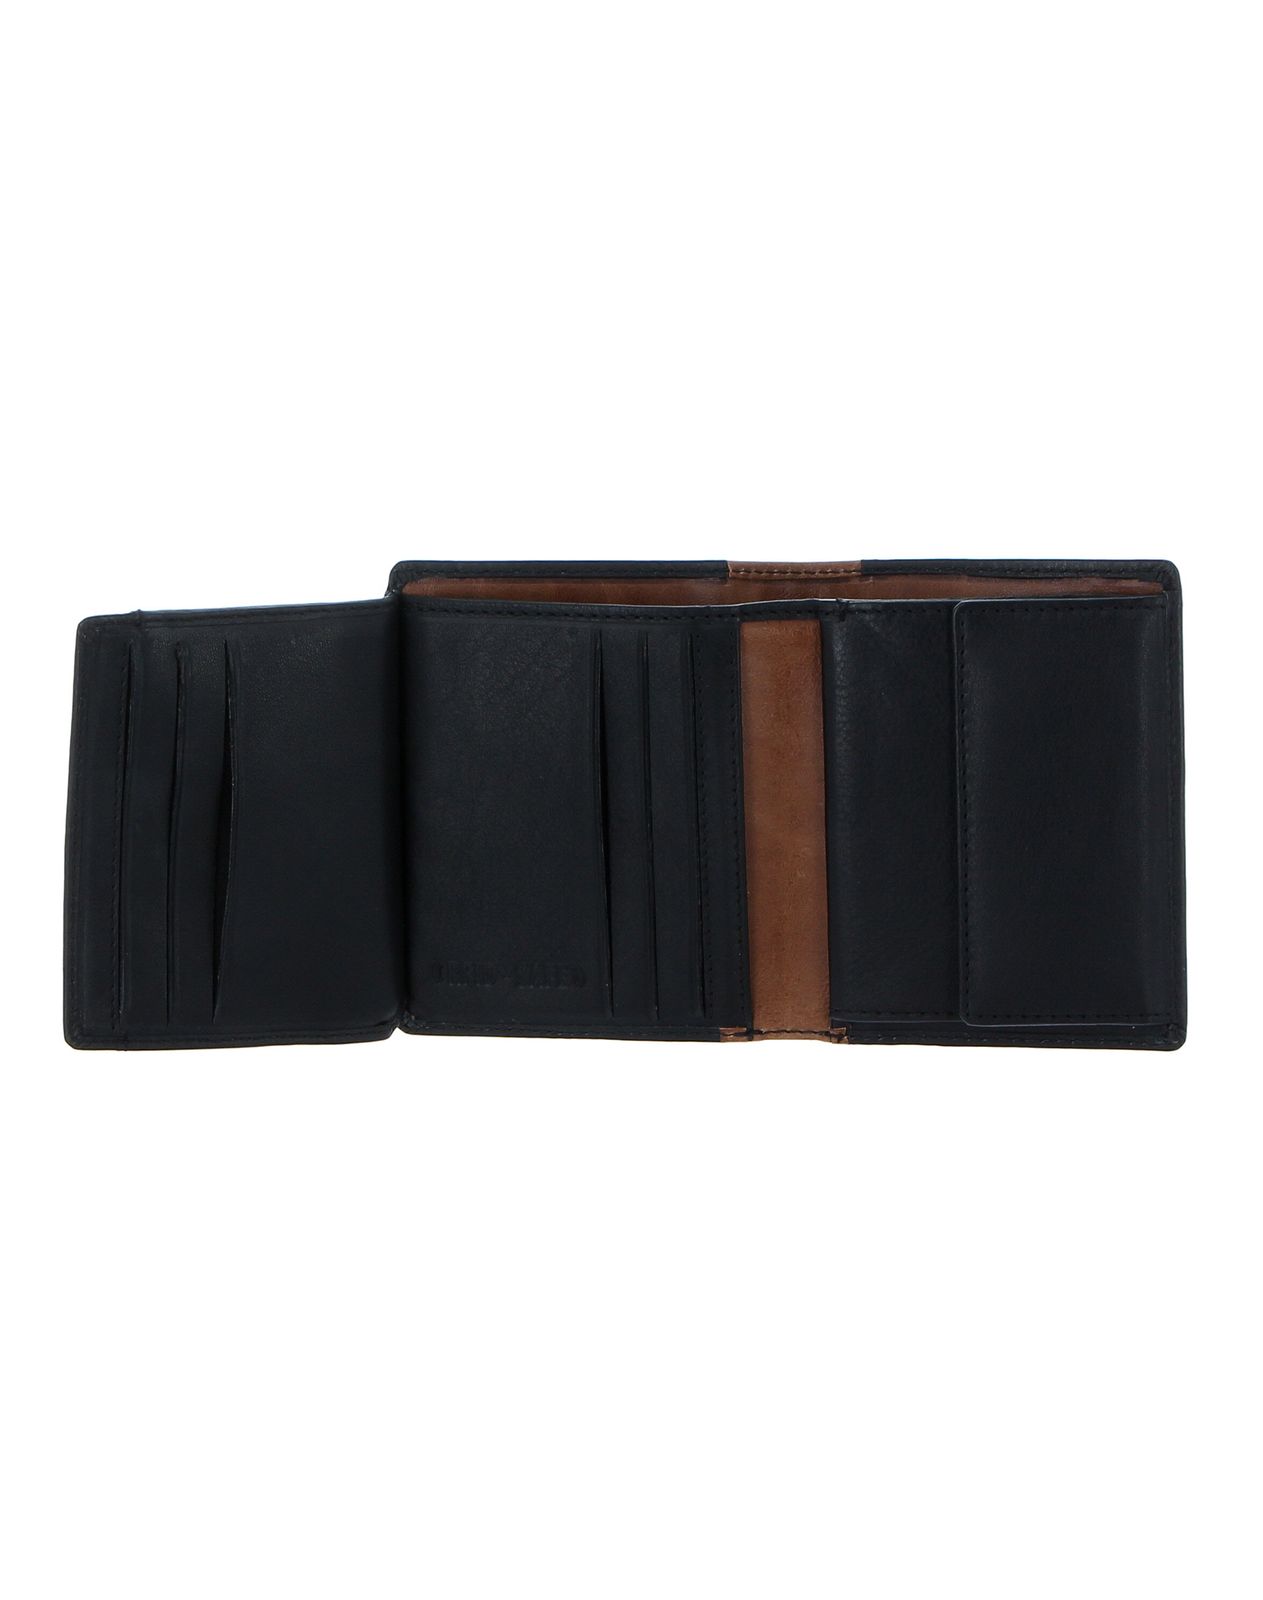 CHIEMSEE Wallet with Flap Black / Cognac | modeherz | Geldbörsen